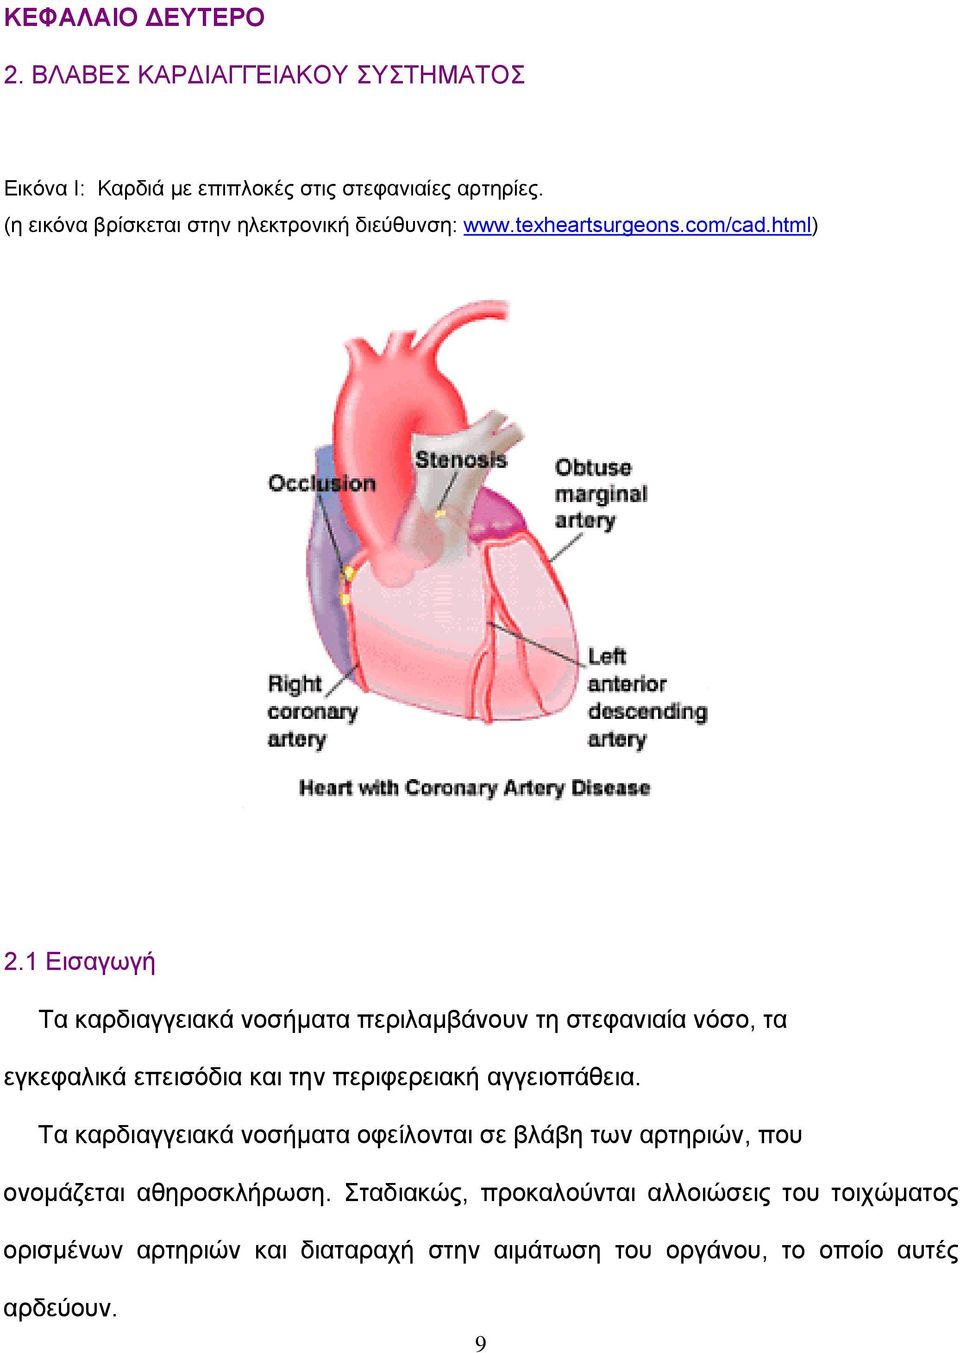 1 Εισαγωγή Τα καρδιαγγειακά νοσήματα περιλαμβάνουν τη στεφανιαία νόσο, τα εγκεφαλικά επεισόδια και την περιφερειακή αγγειοπάθεια.